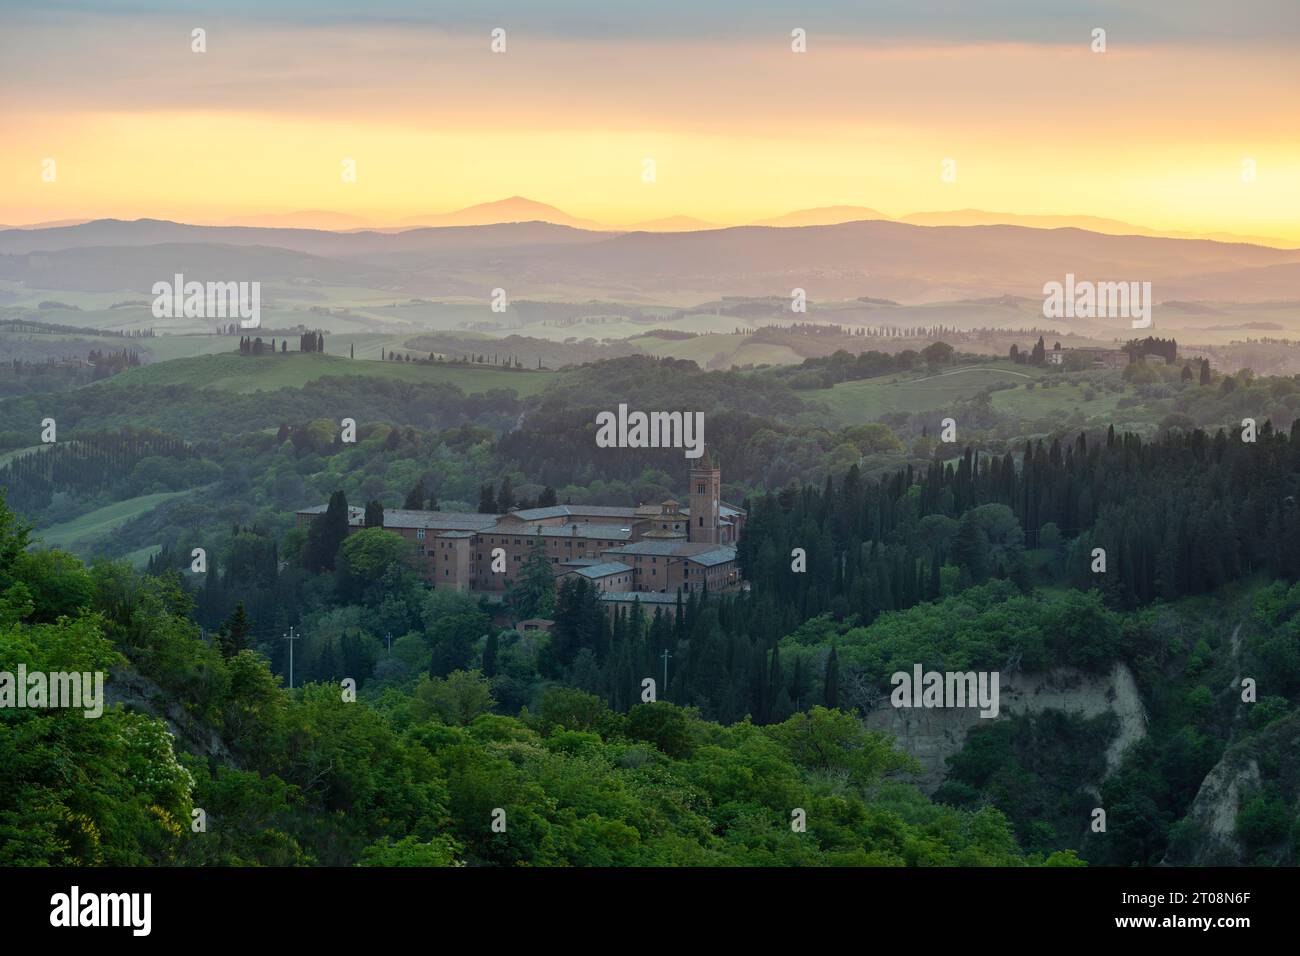 Abbey Abbazia di Monte Oliveto Maggiore, evening light, Chiusure, Asciano, Crete Senesi, province of Siena, Tuscany, Italy Stock Photo